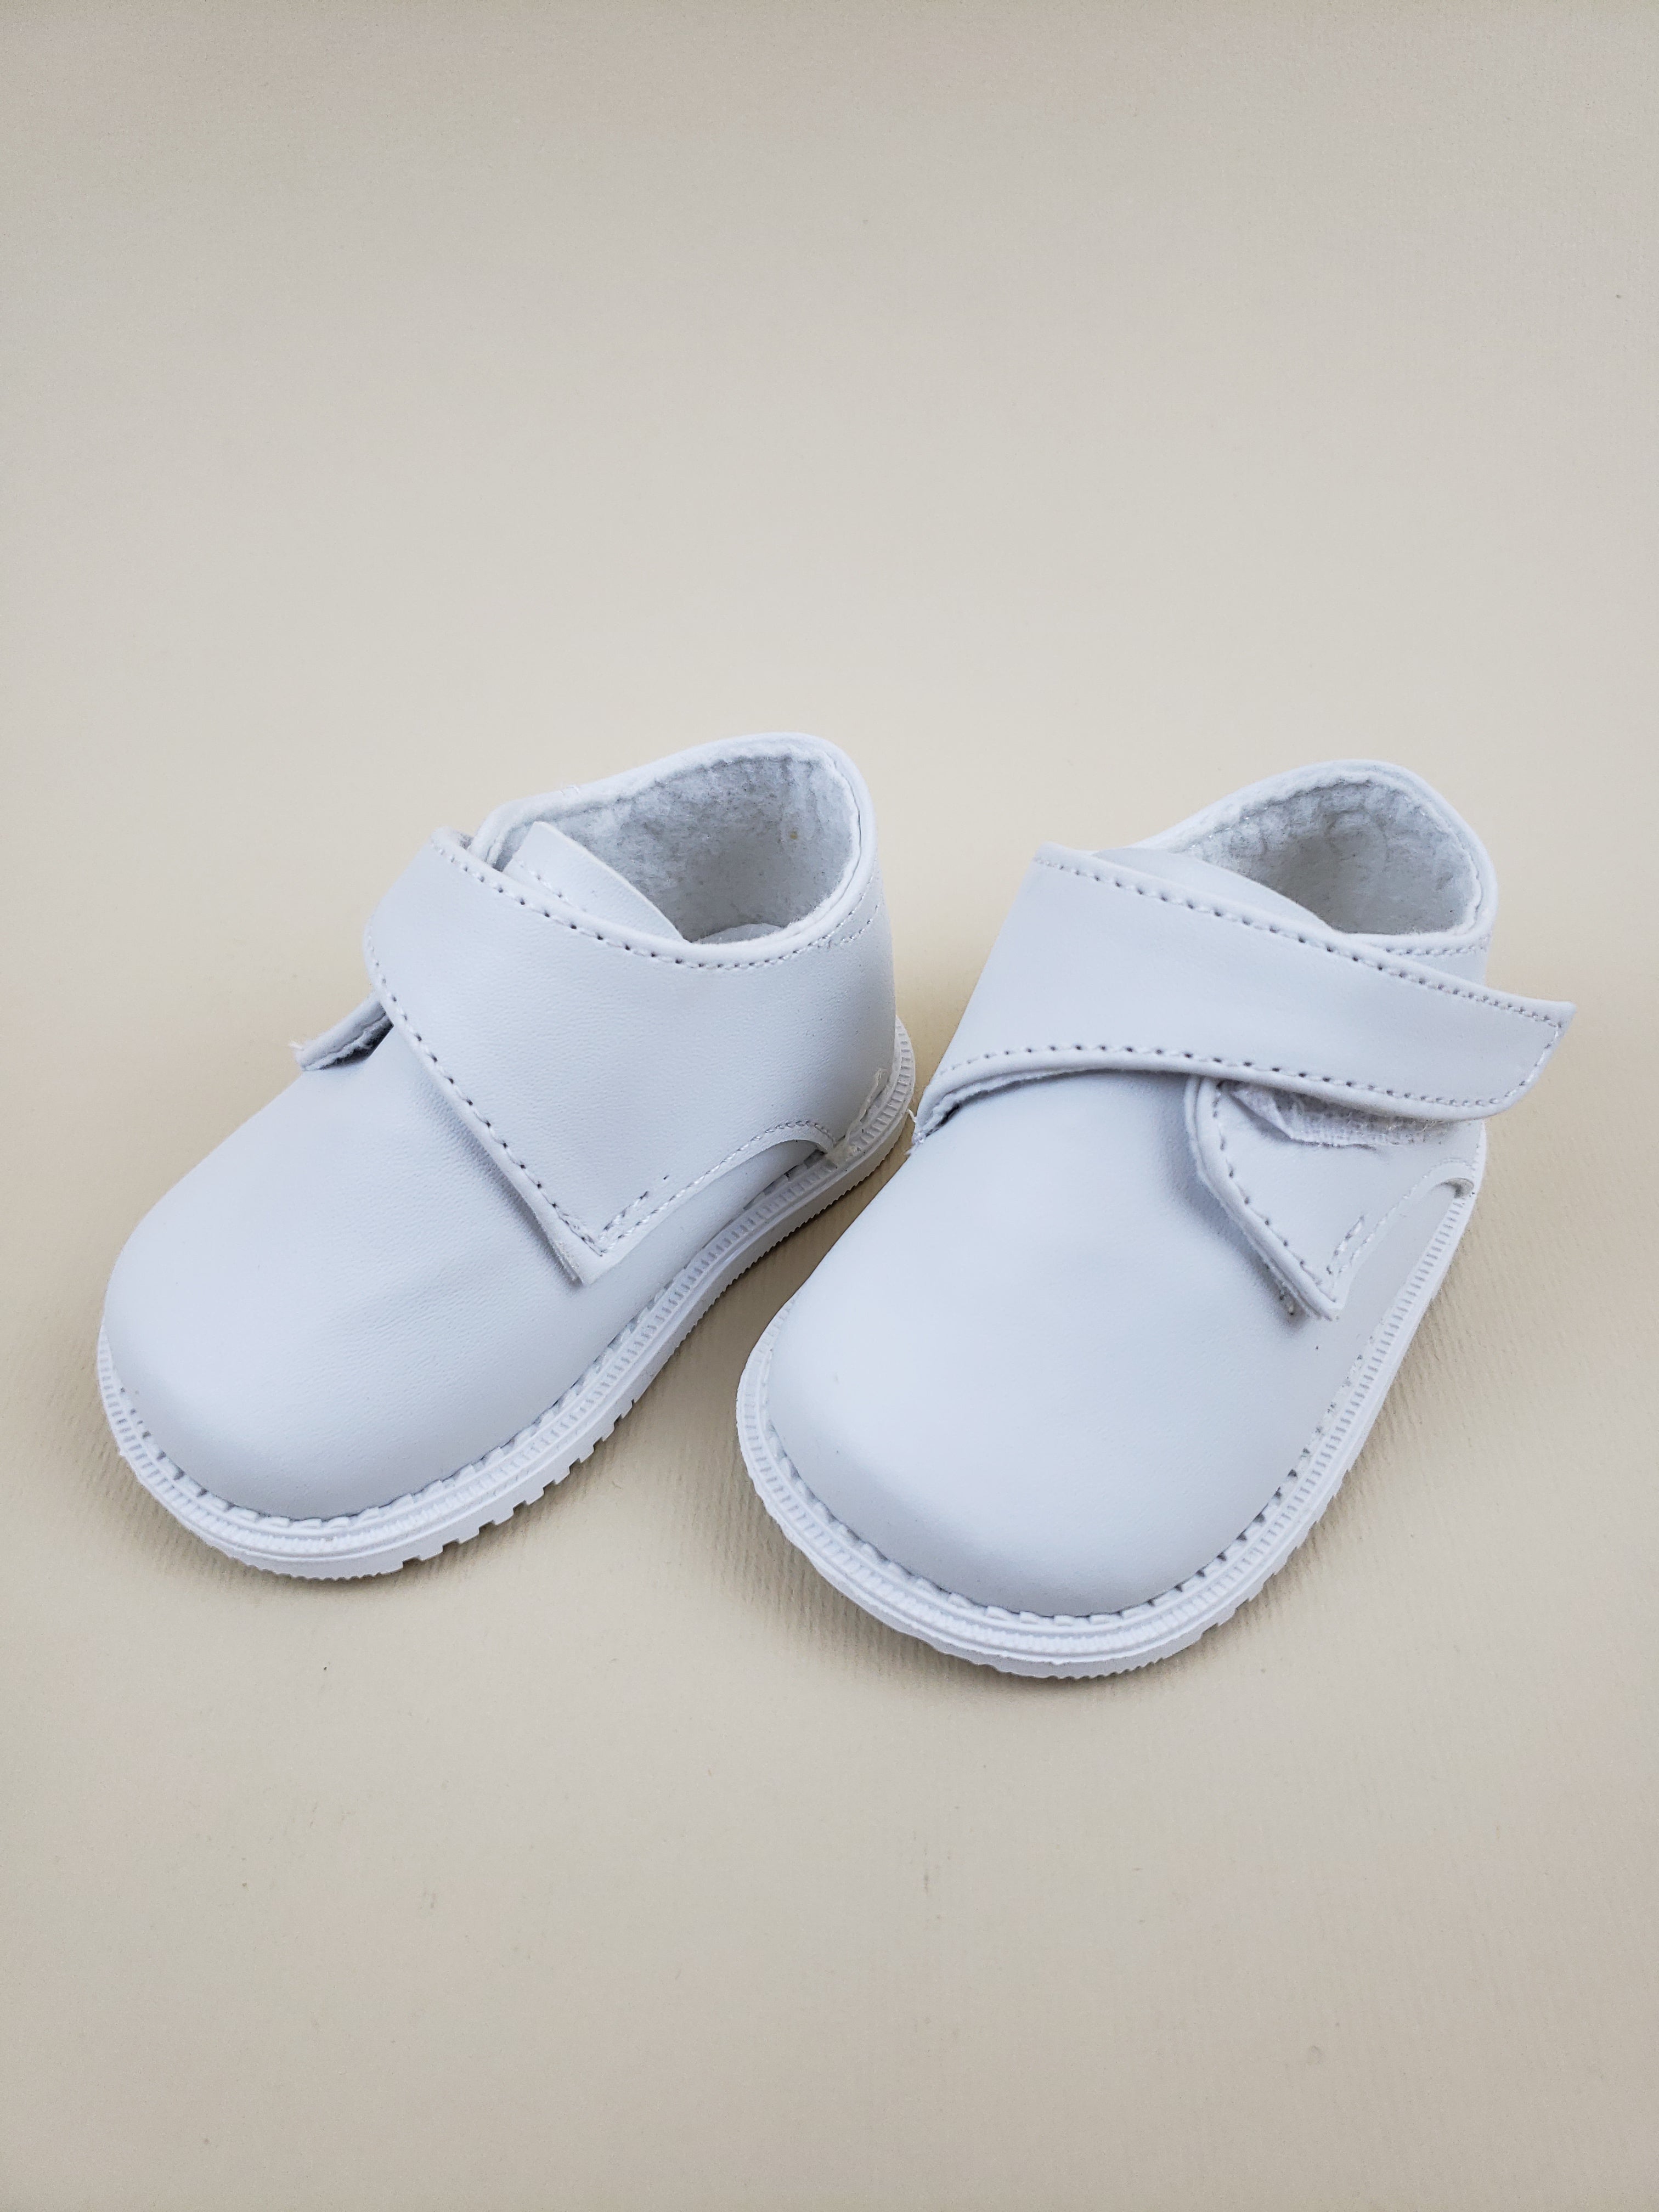 Zapatos para Bebe #300  Niño